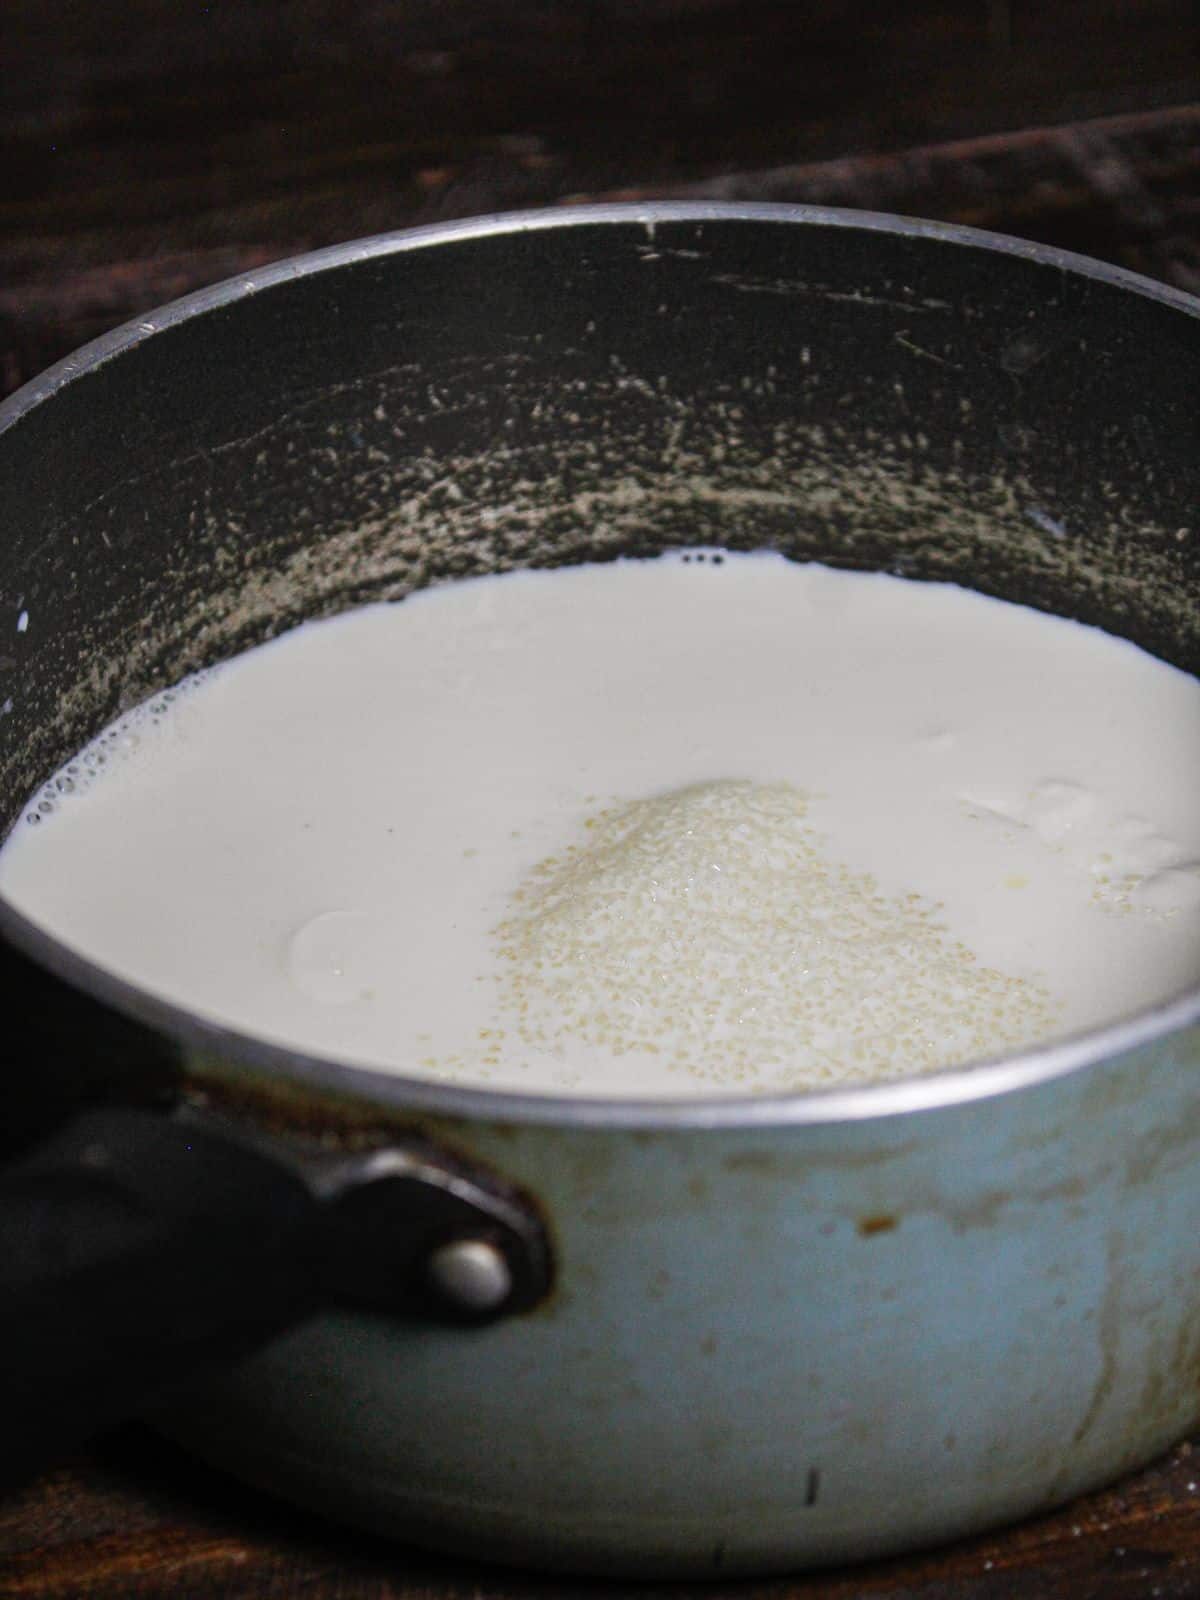 Add sugar to the milk in the vessel 